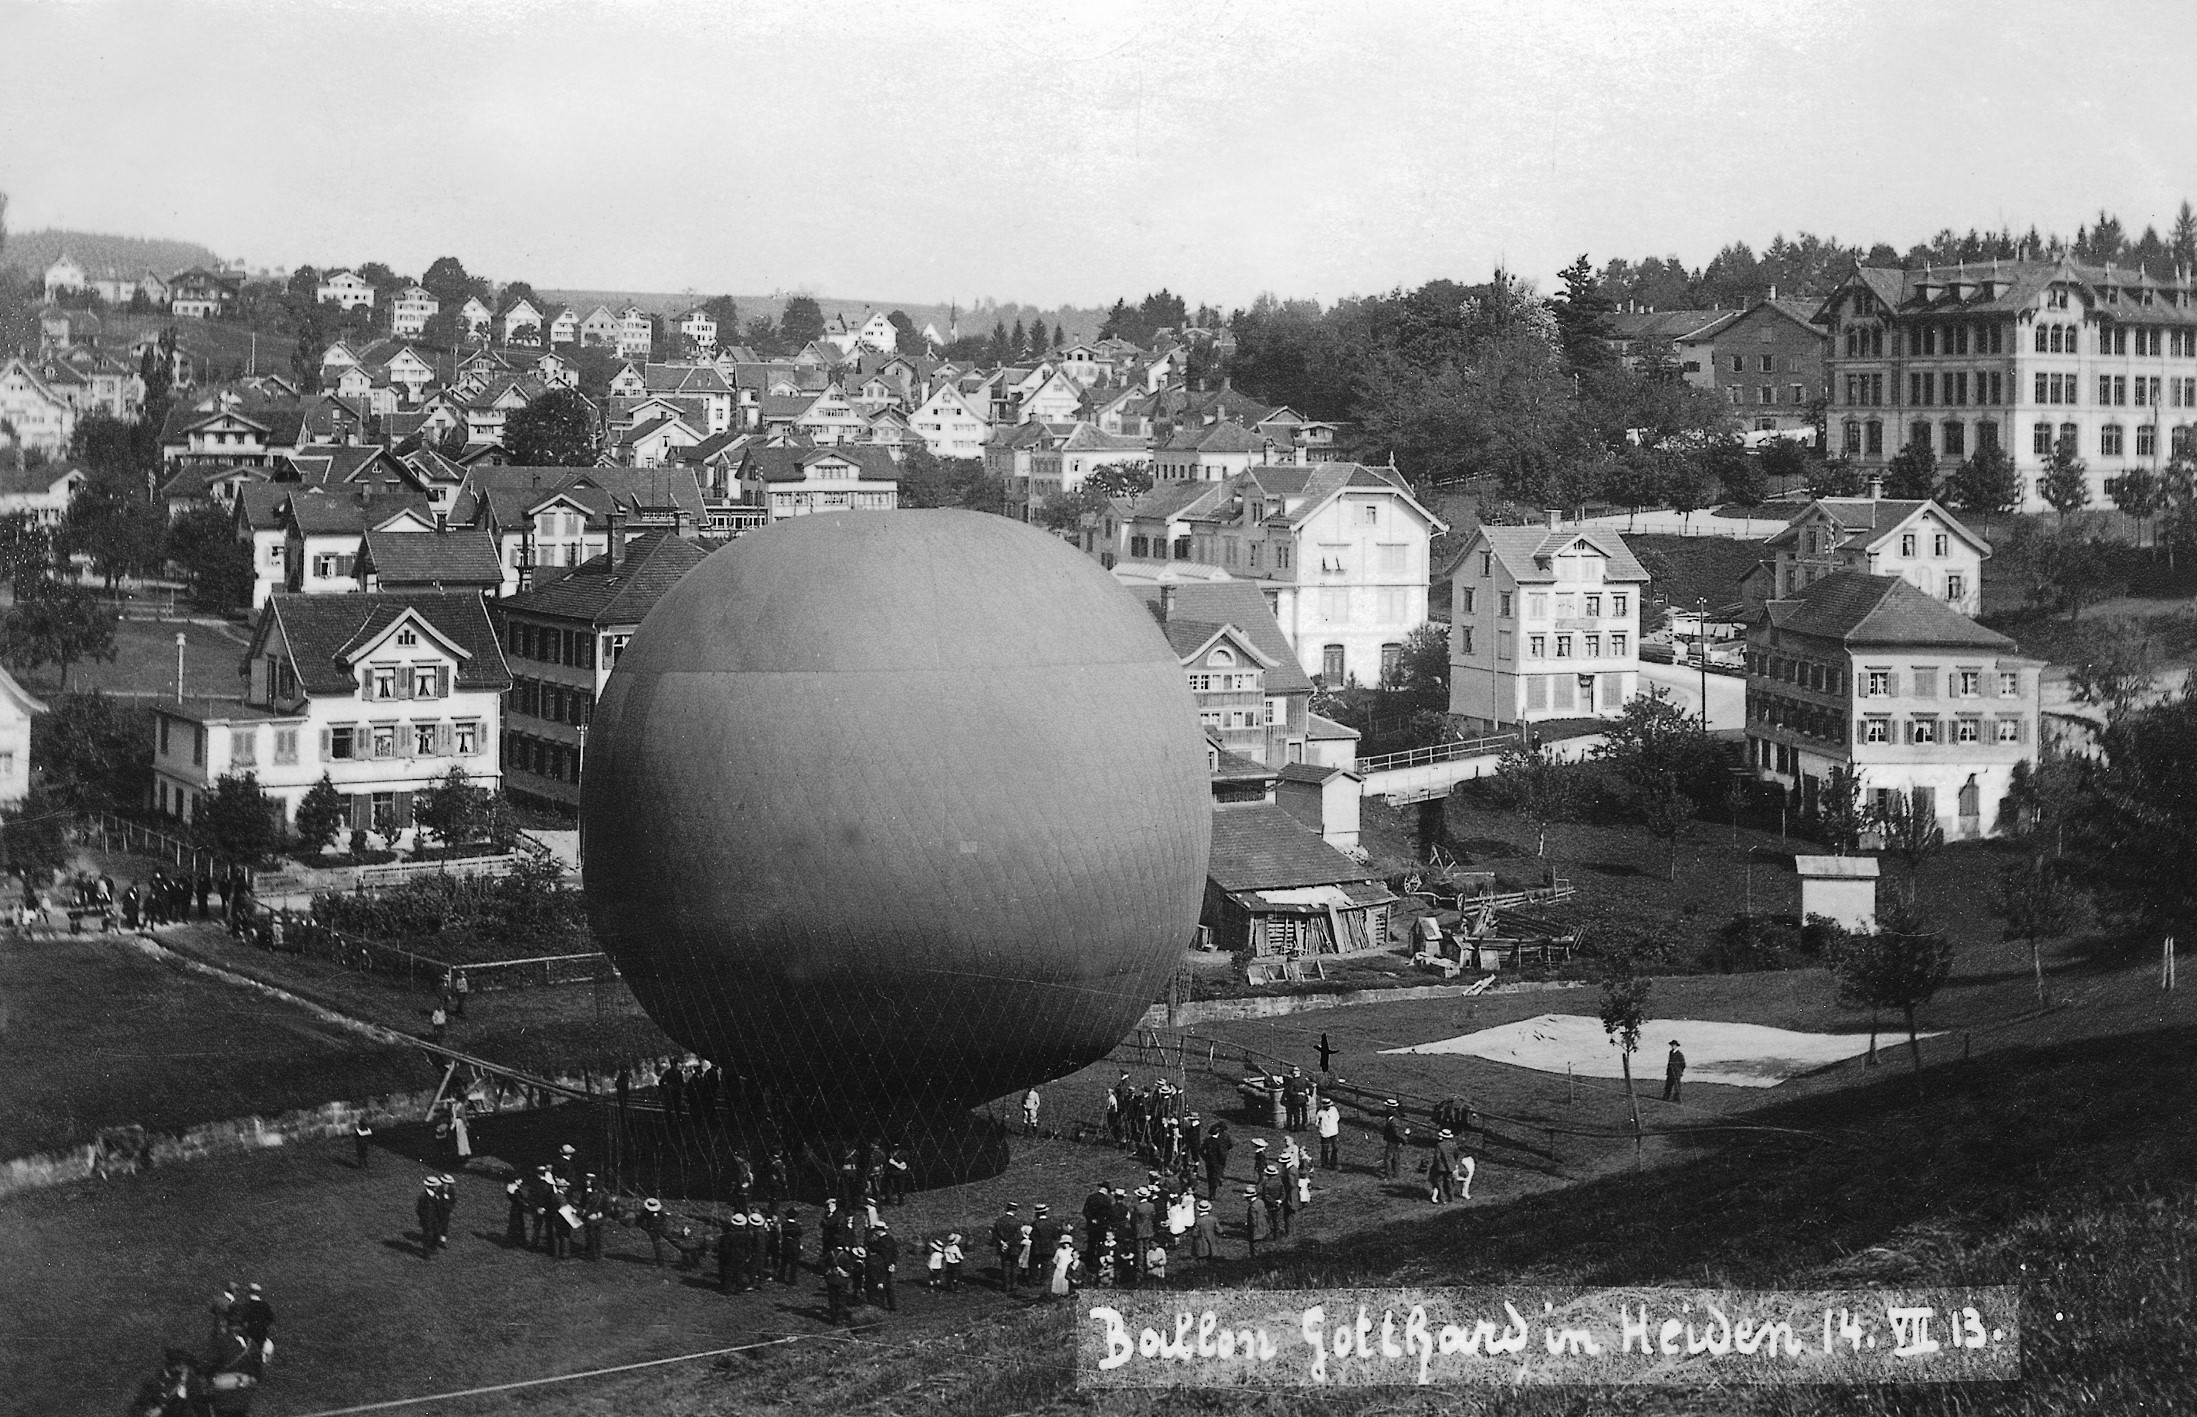 Ballonstart am 13. Juli 1913 auf dem Areal des heutigen Schwimmbades. Die grosse Wiese diente  früher  als Jahrmarktplatz mit  zahlreichen Budenattraktionen.